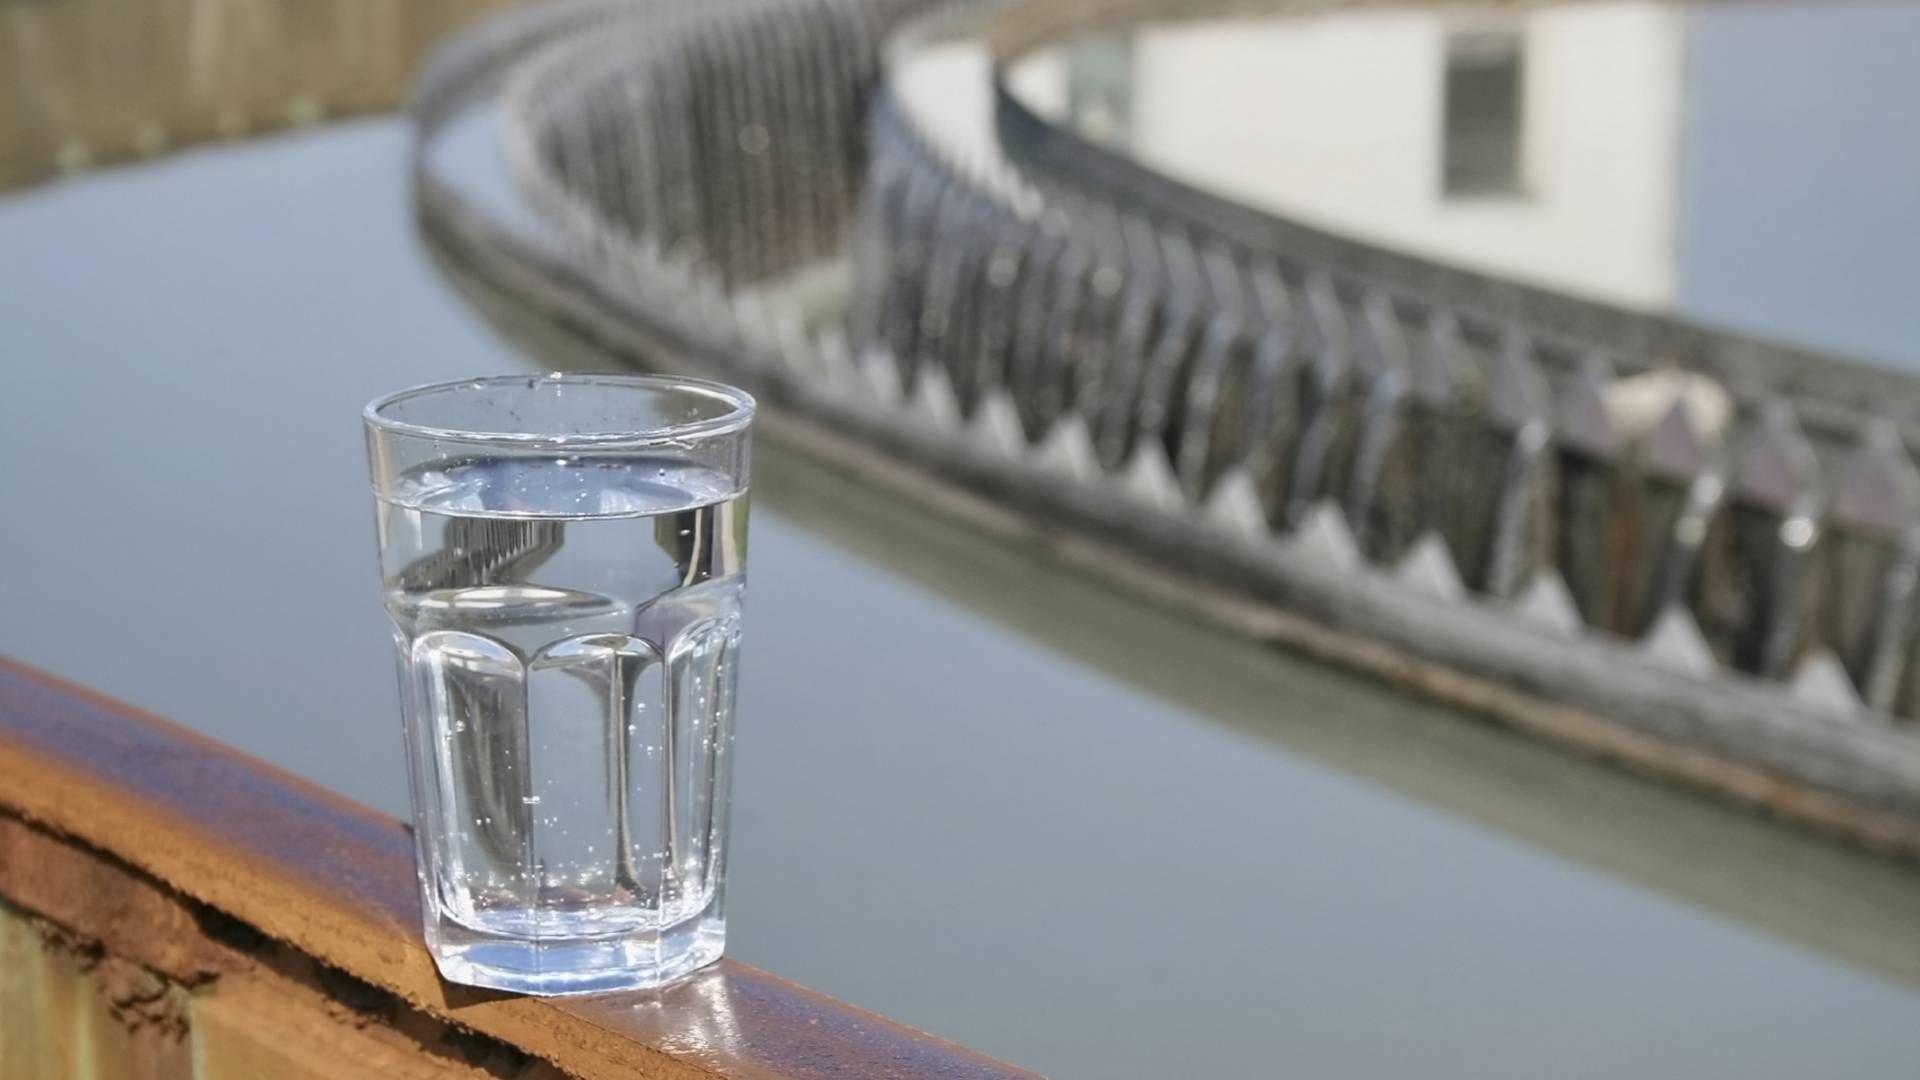 Alumichem sikrer rent drikkevand til millioner af mennesker verden over. | Foto: Alumichem/PR